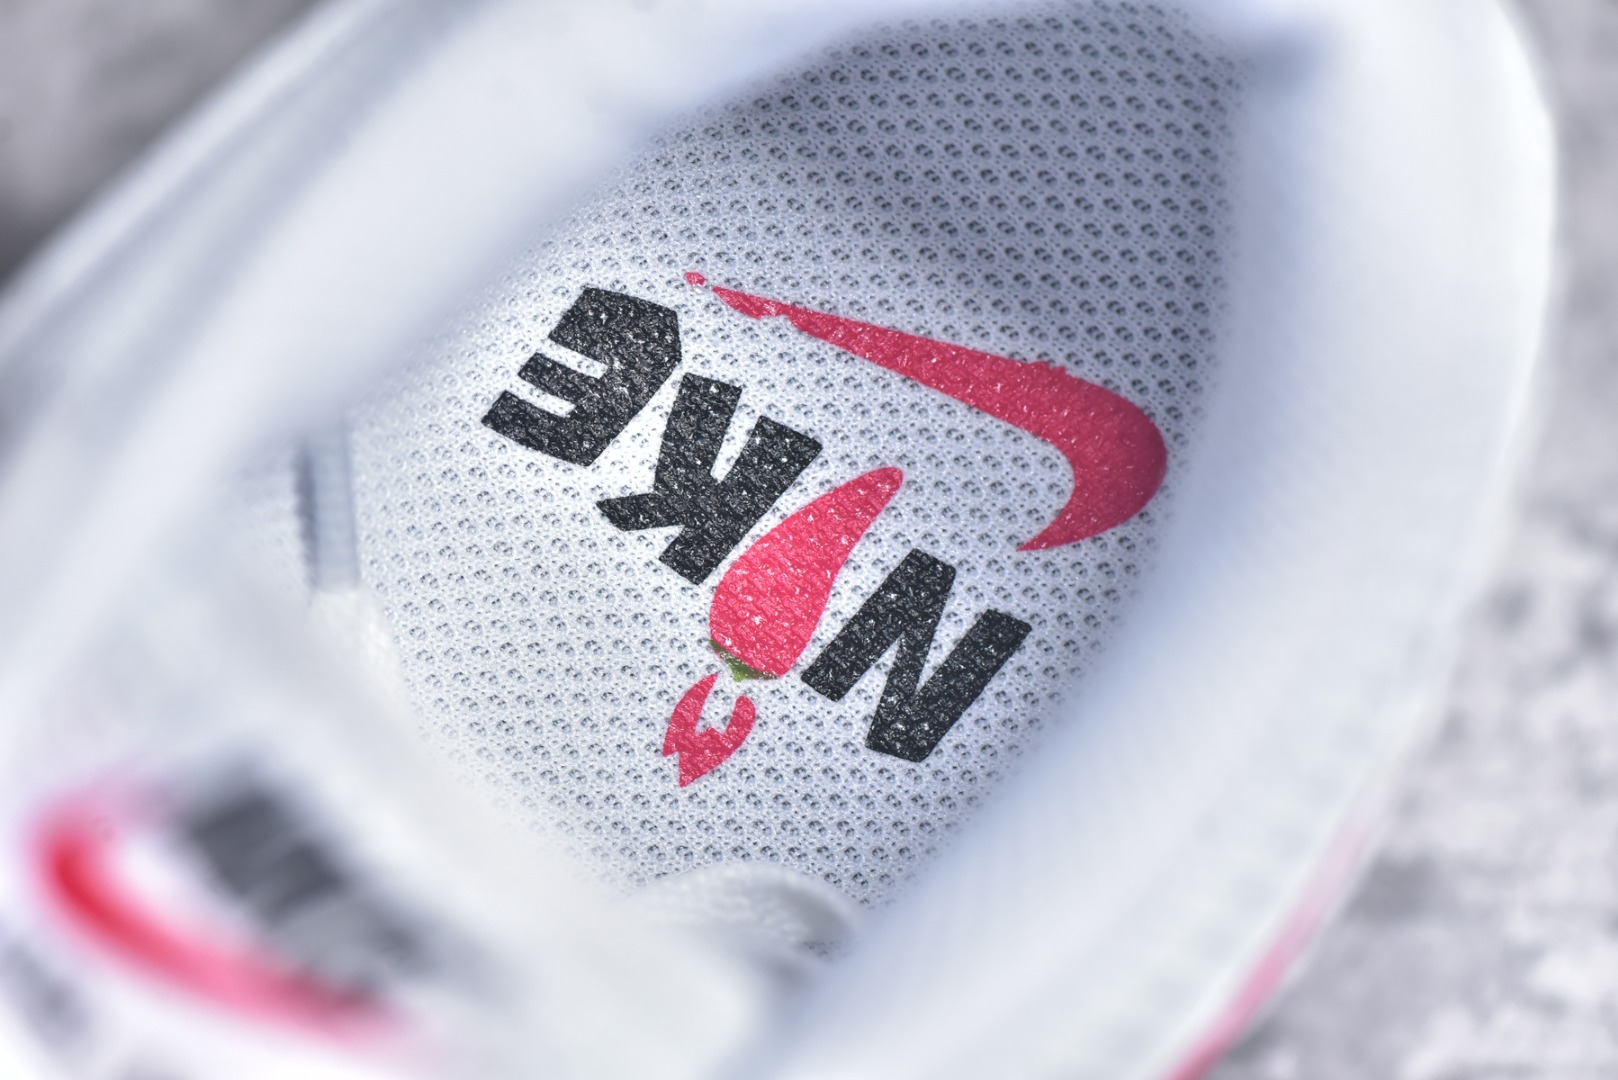 $65 Buy online Nike Air Max 1 replica sneakers HF7746-100.  $65 Buy online Nike Air Max 1 replica sneakers HF7746-100.  30,Sports footwear,replica,Nike Air Max 1 Prm